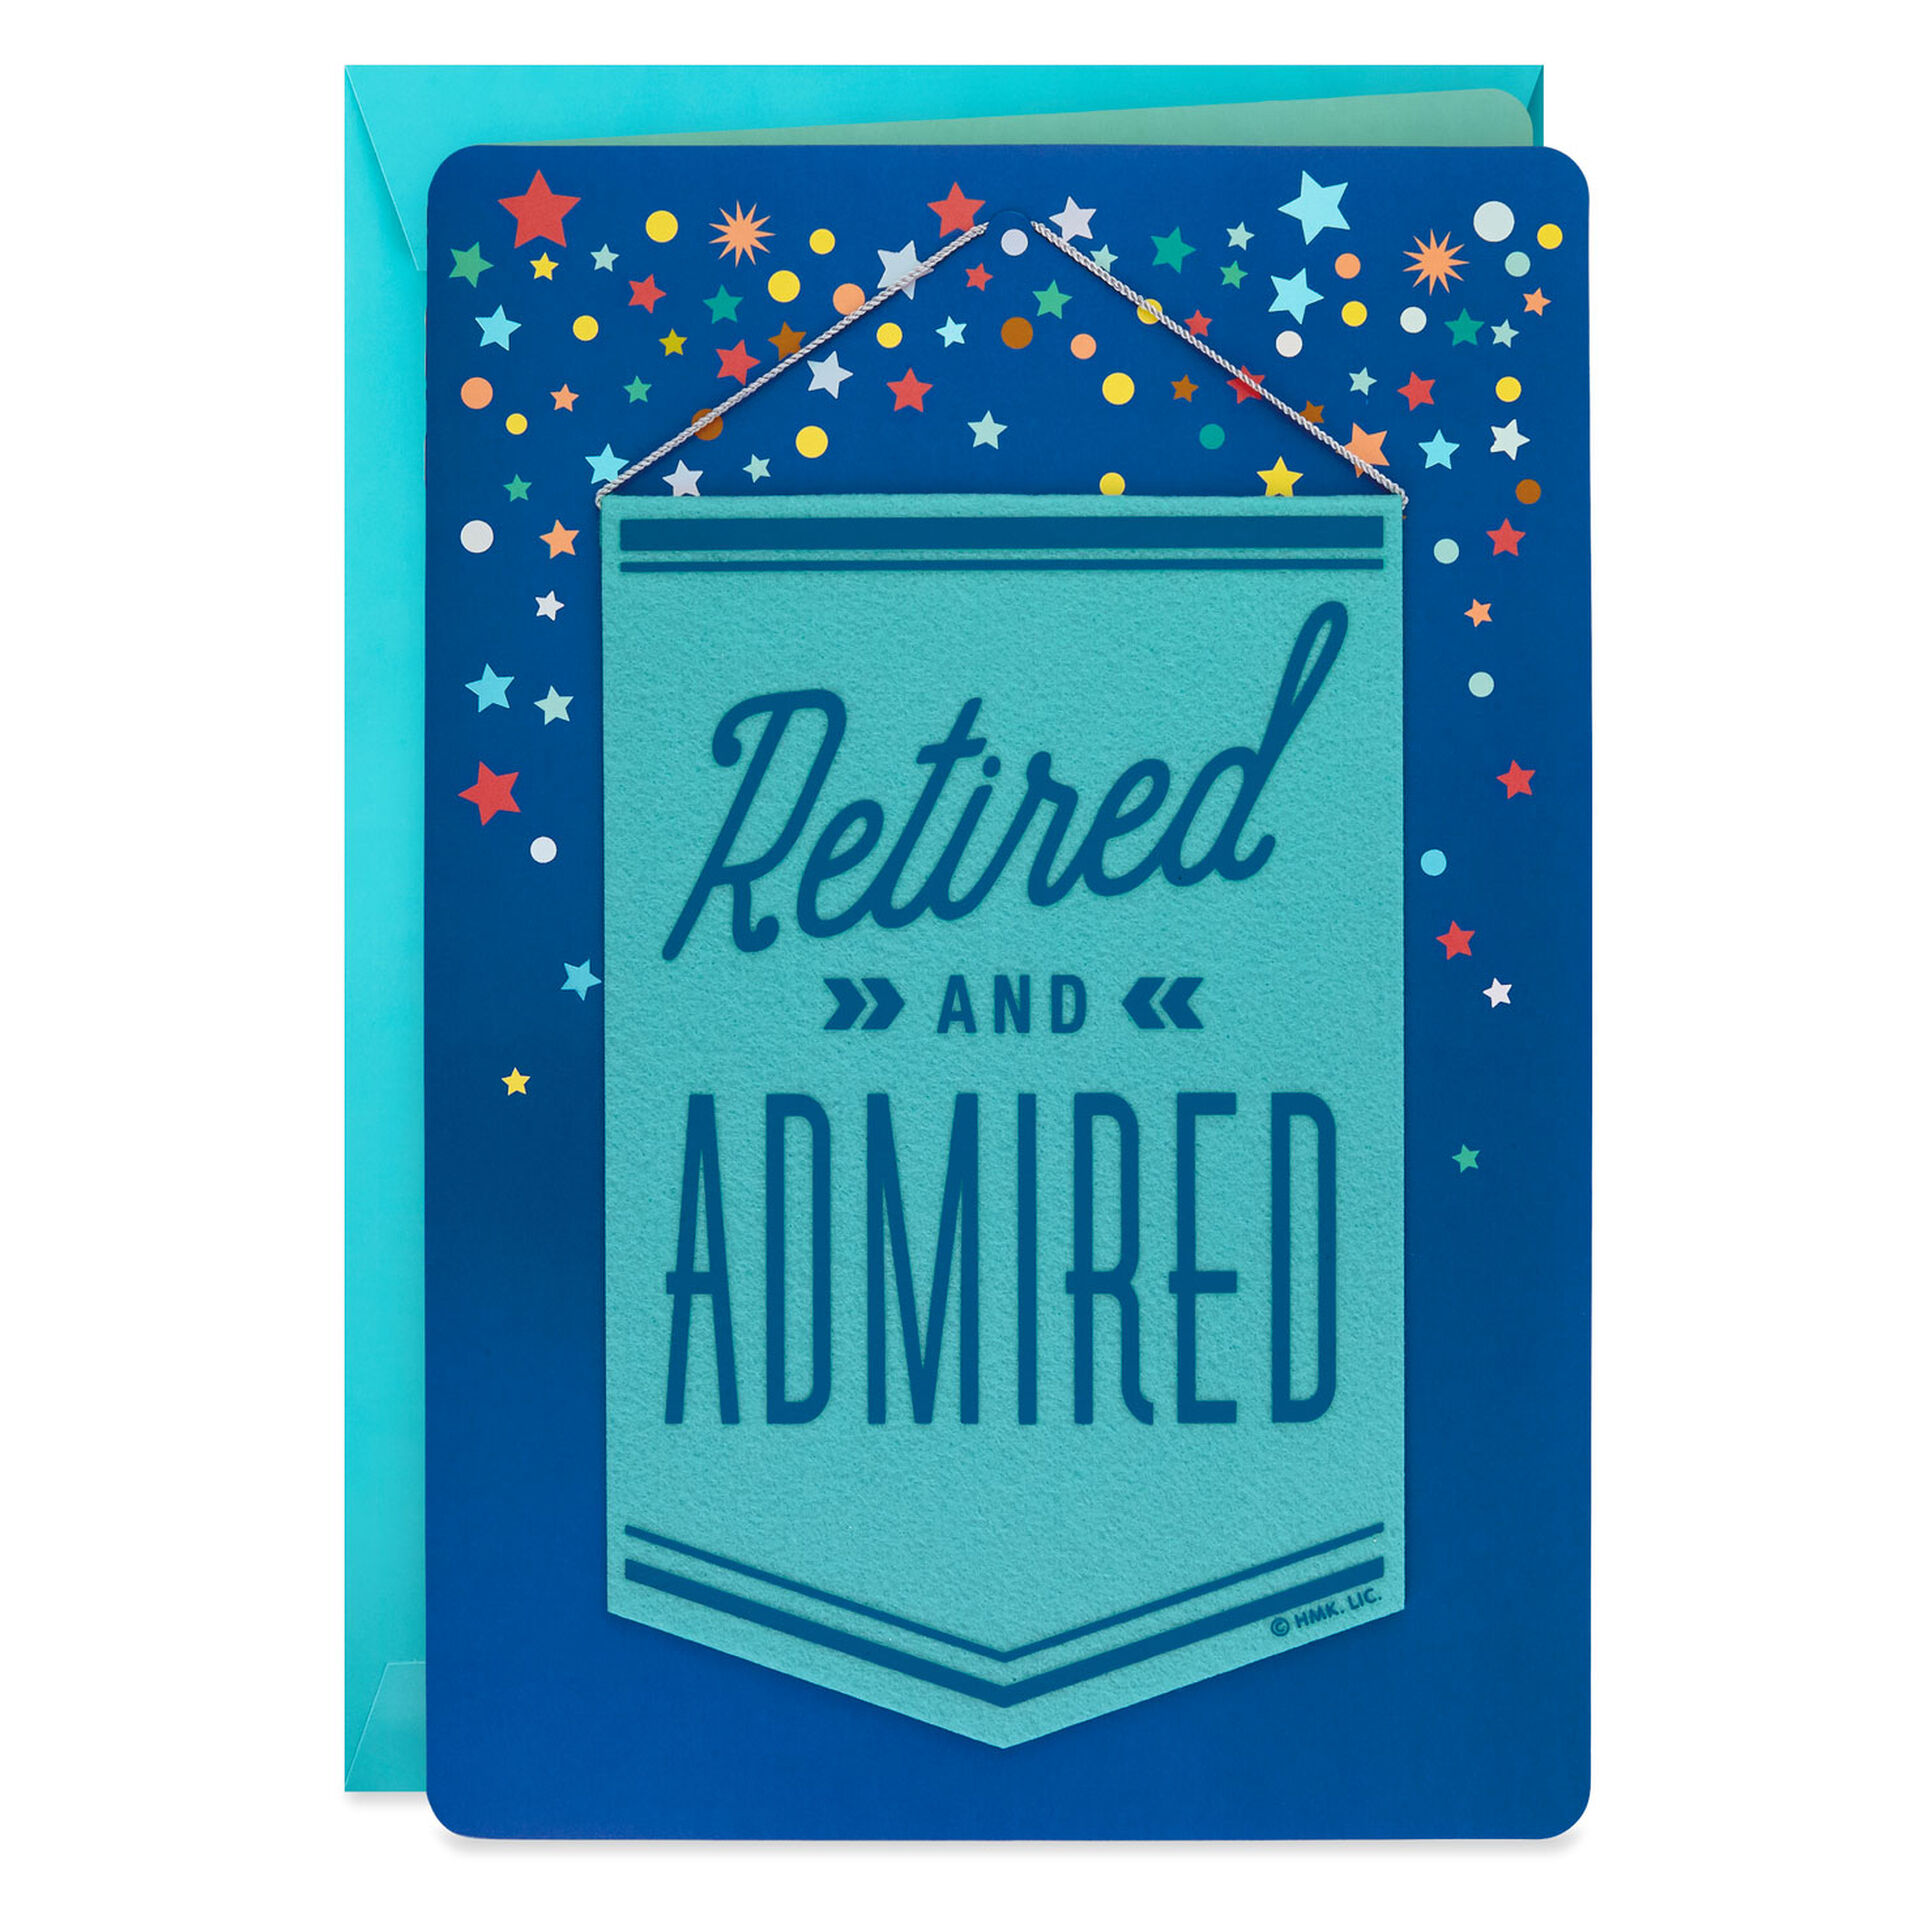 Retired-Admired-Retirement-Card_1299CBG3022_01.jpg